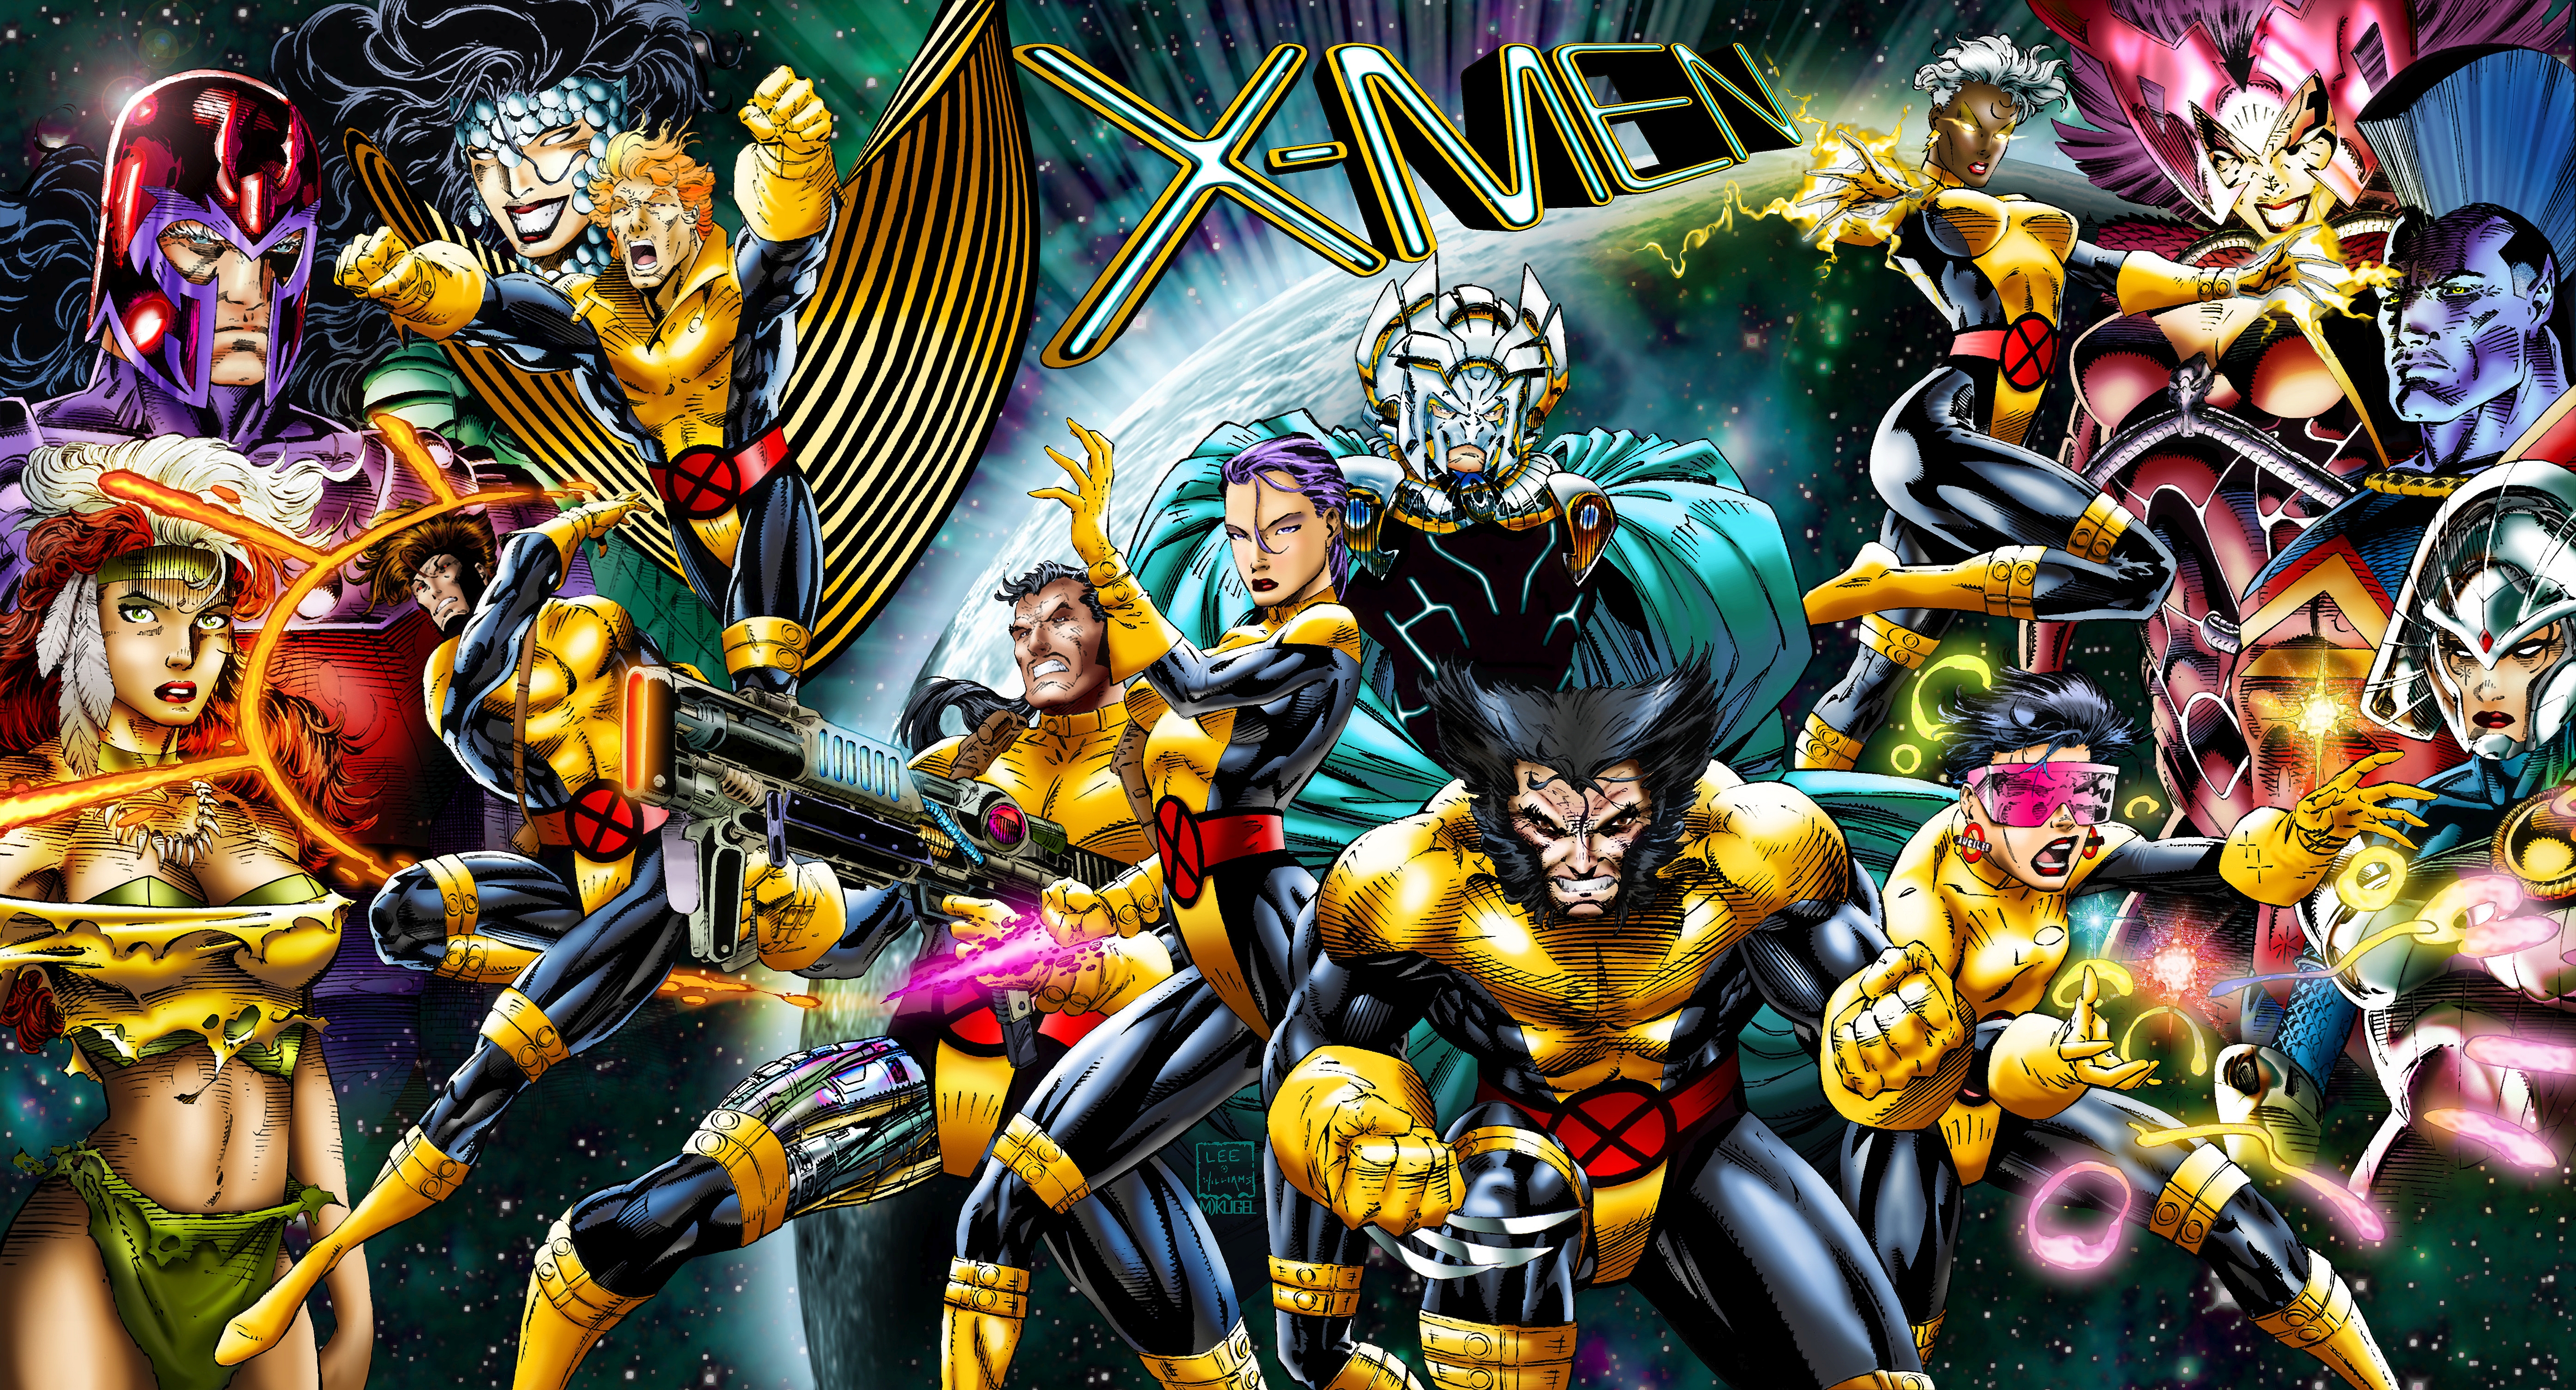 Chiêm ngưỡng hình nền X-Men 4K siêu nét đúng là trải nghiệm tuyệt vời cho mắt. Màu sắc tươi tắn và chi tiết tinh xảo như cắt từ siêu phẩm điện ảnh. Tự hào là fan cuồng của X-Men khi sử dụng hình nền này trên thiết bị của mình.